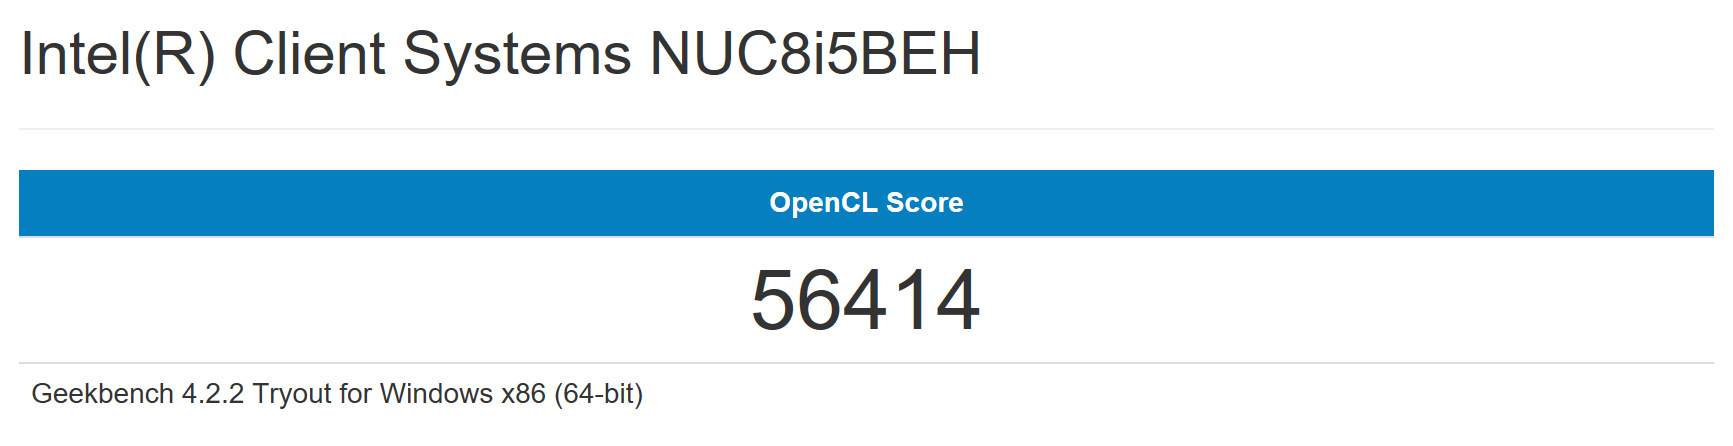 Intel NUC8i5BEH im Test unter Windows 10